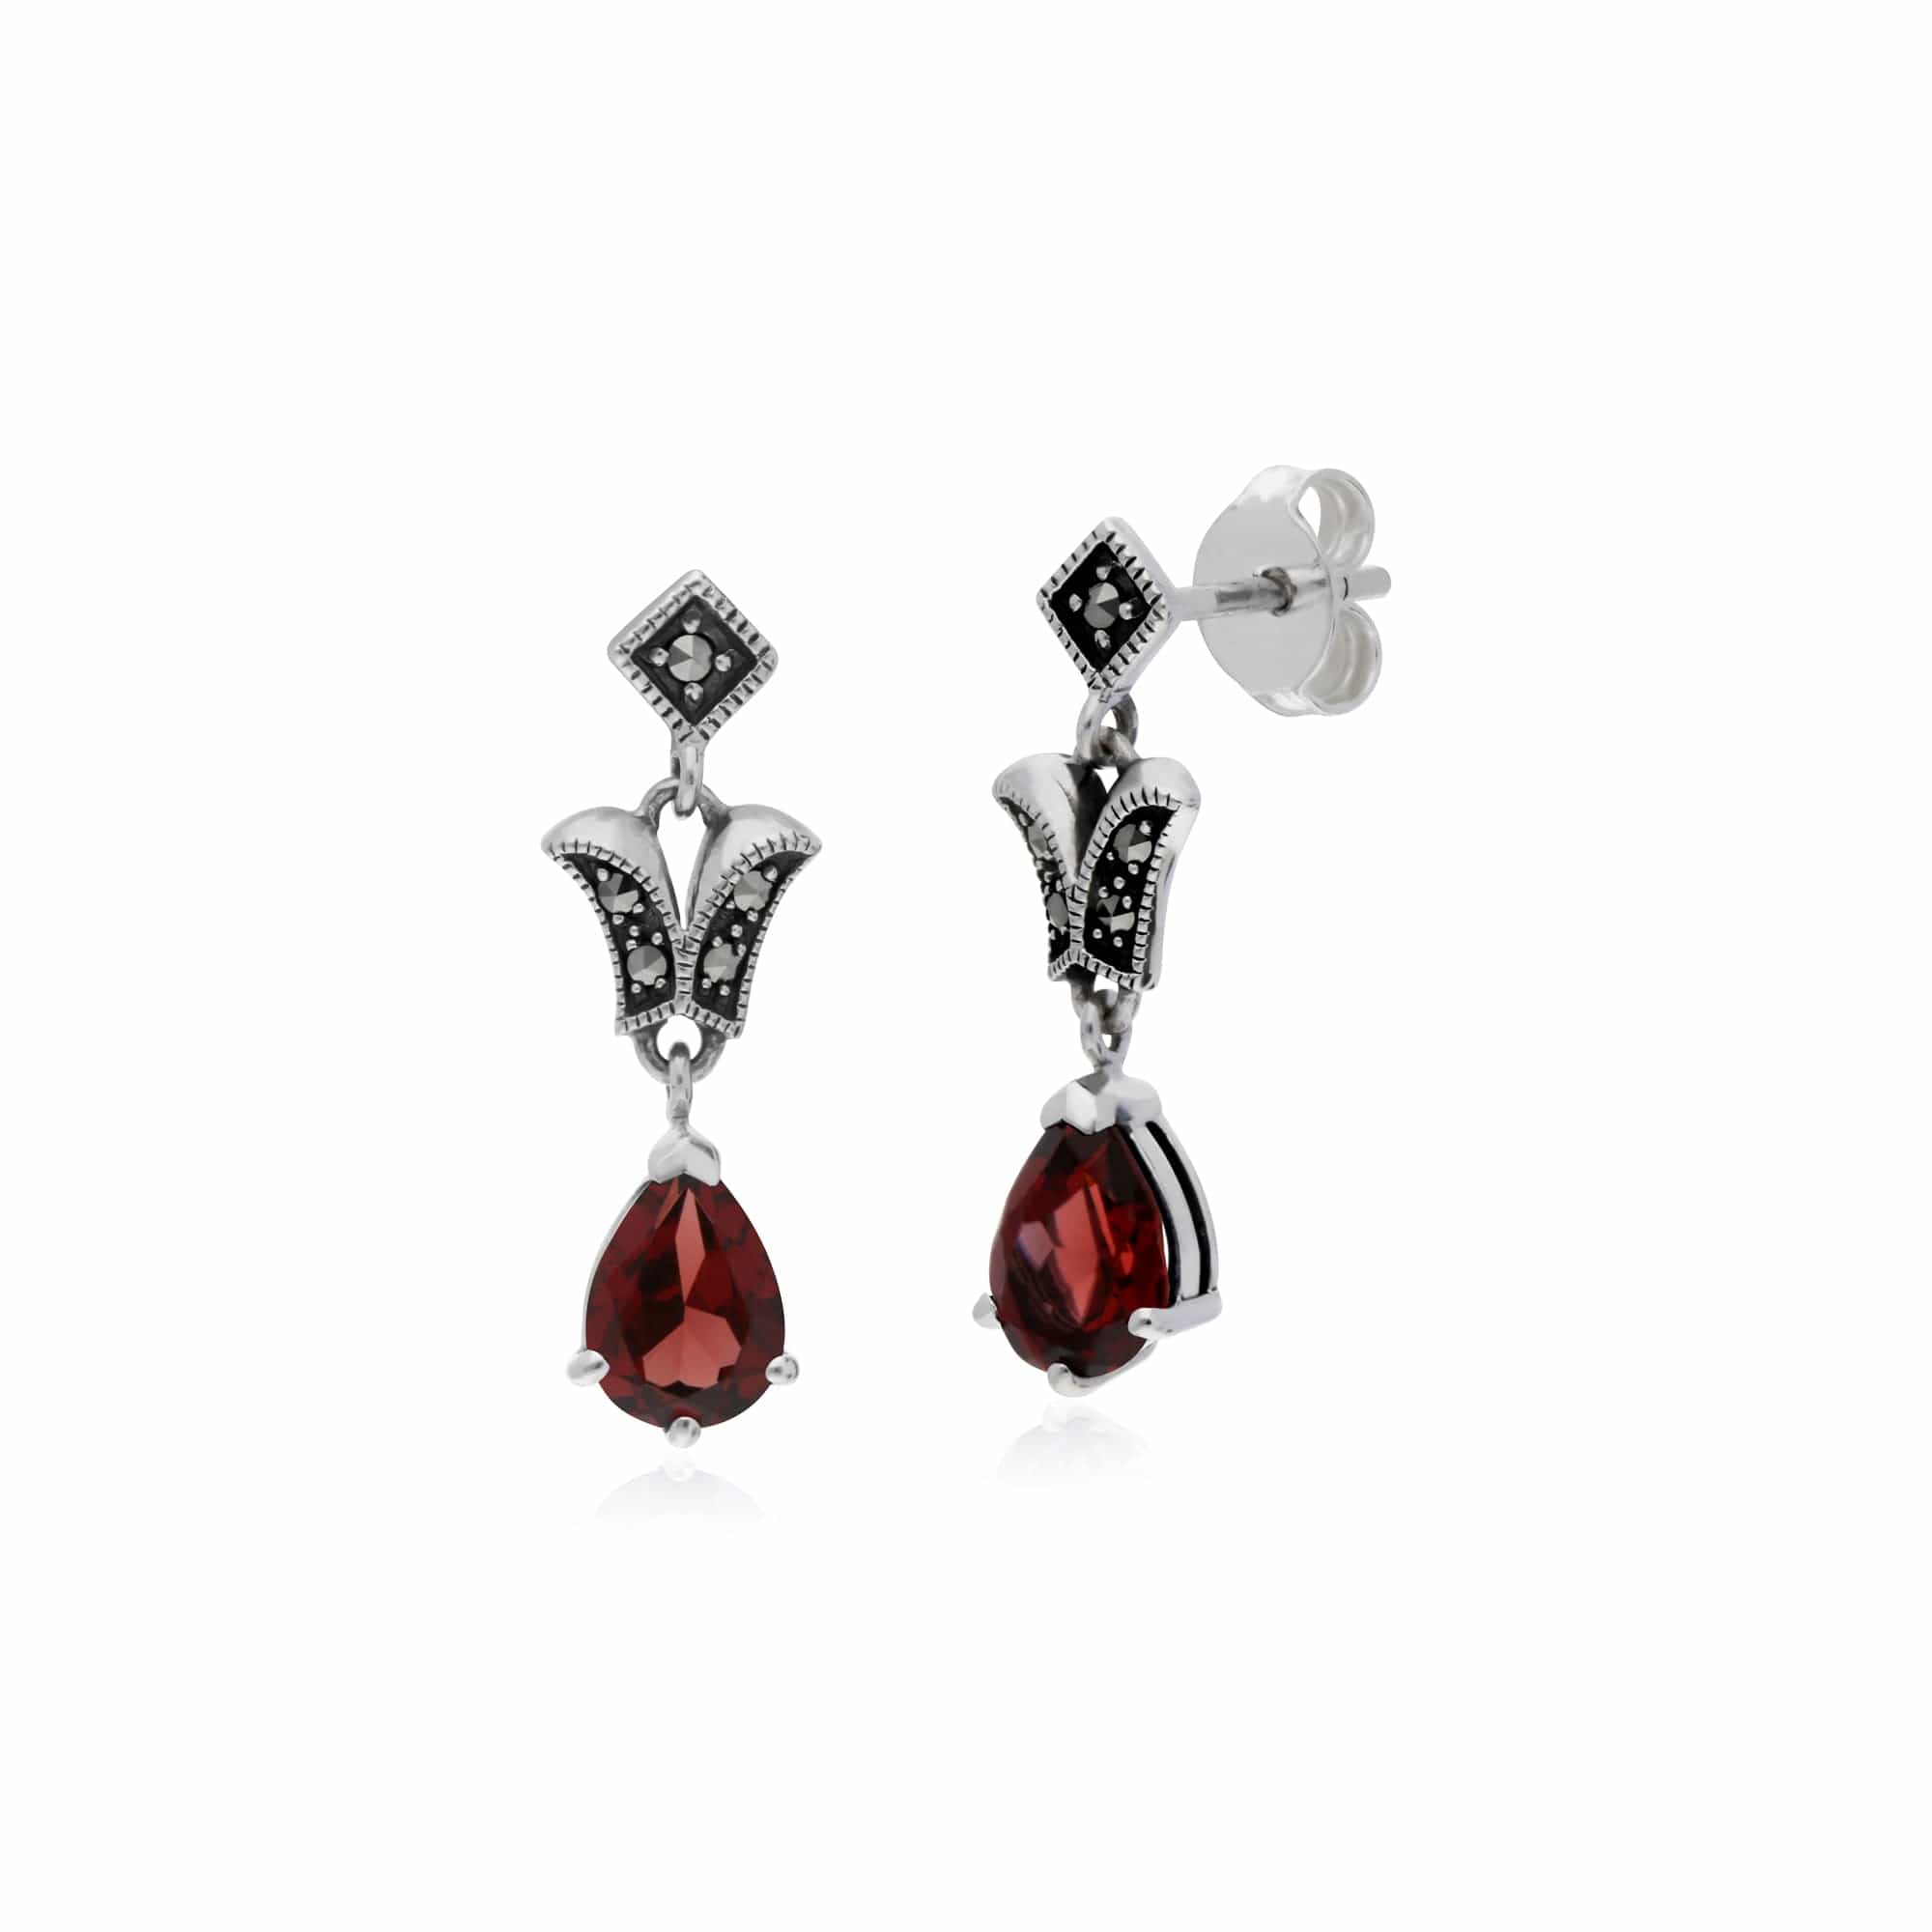 214E859604925 Art Nouveau Style Pear Garnet & Marcasite Drop Earrings in 925 Sterling Silver 1